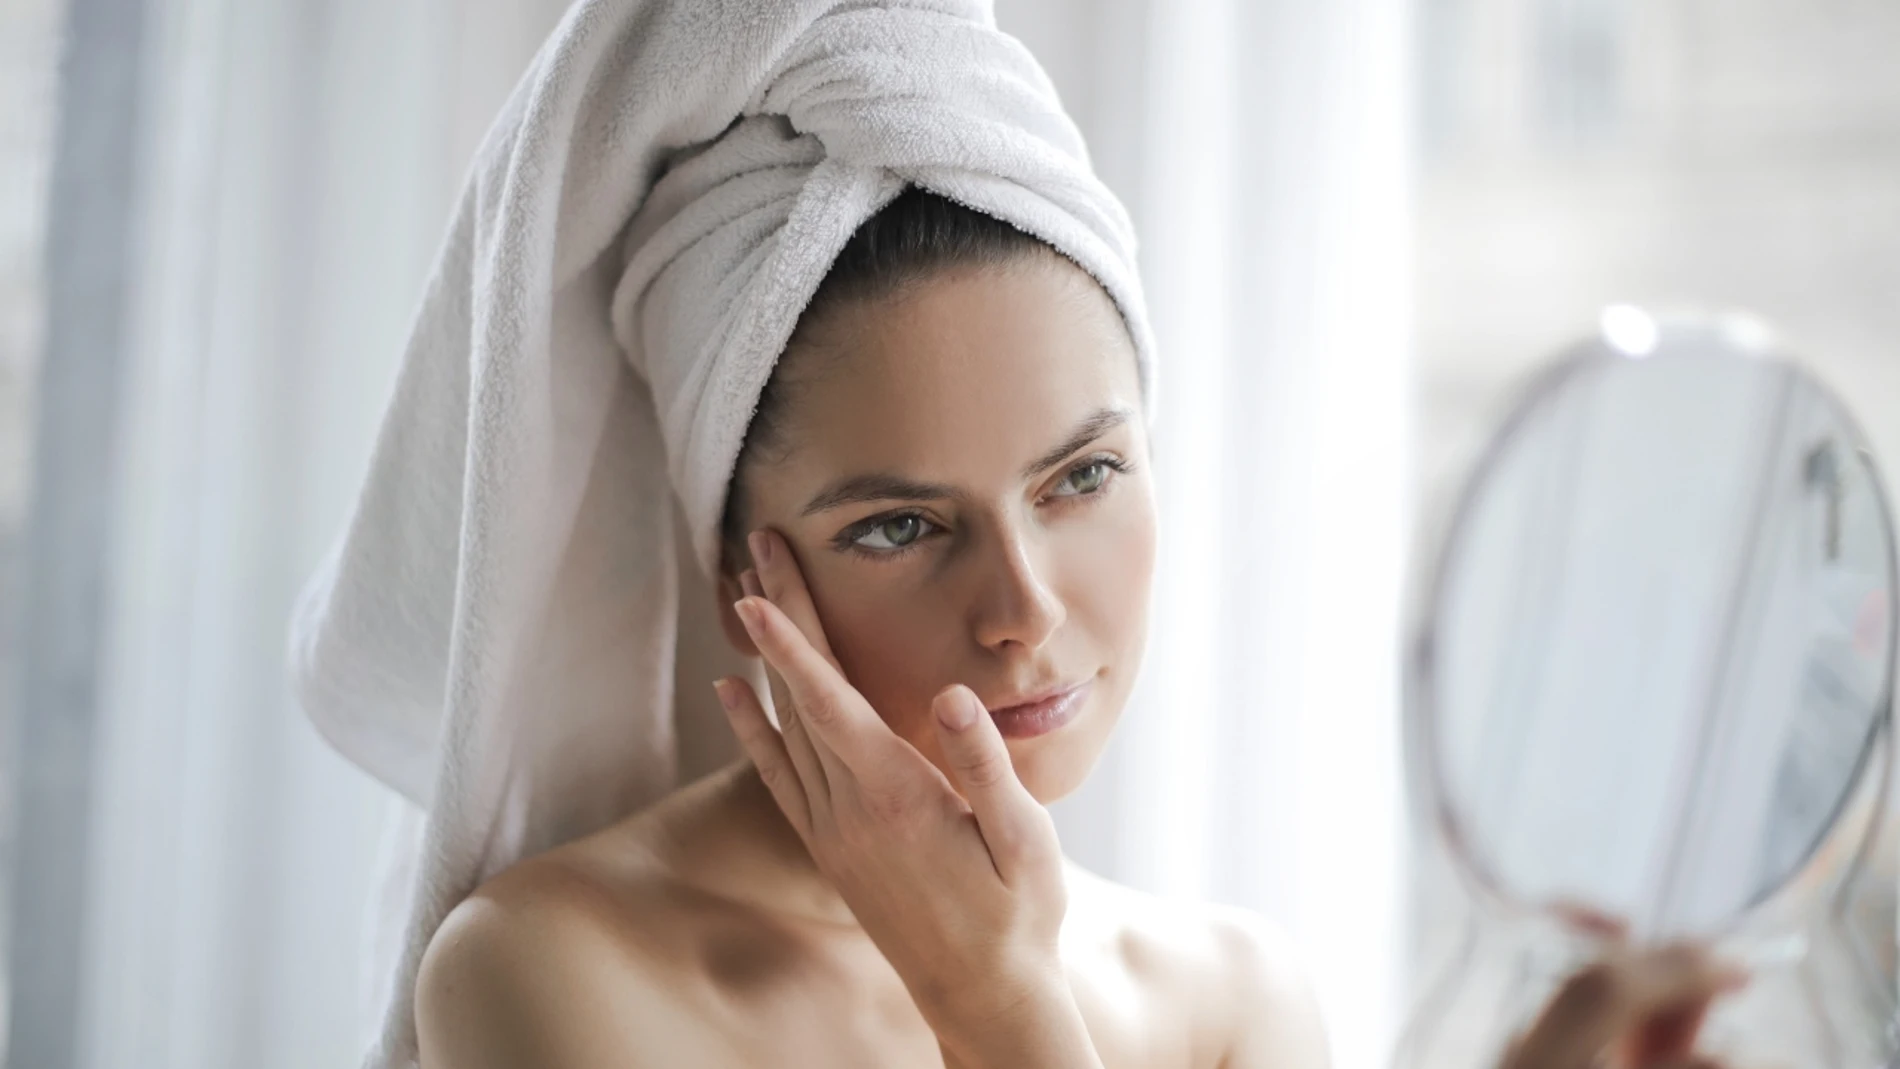 Mantener una higiene facial diaria es la clave para conseguir una textura de piel suave y fresca. A